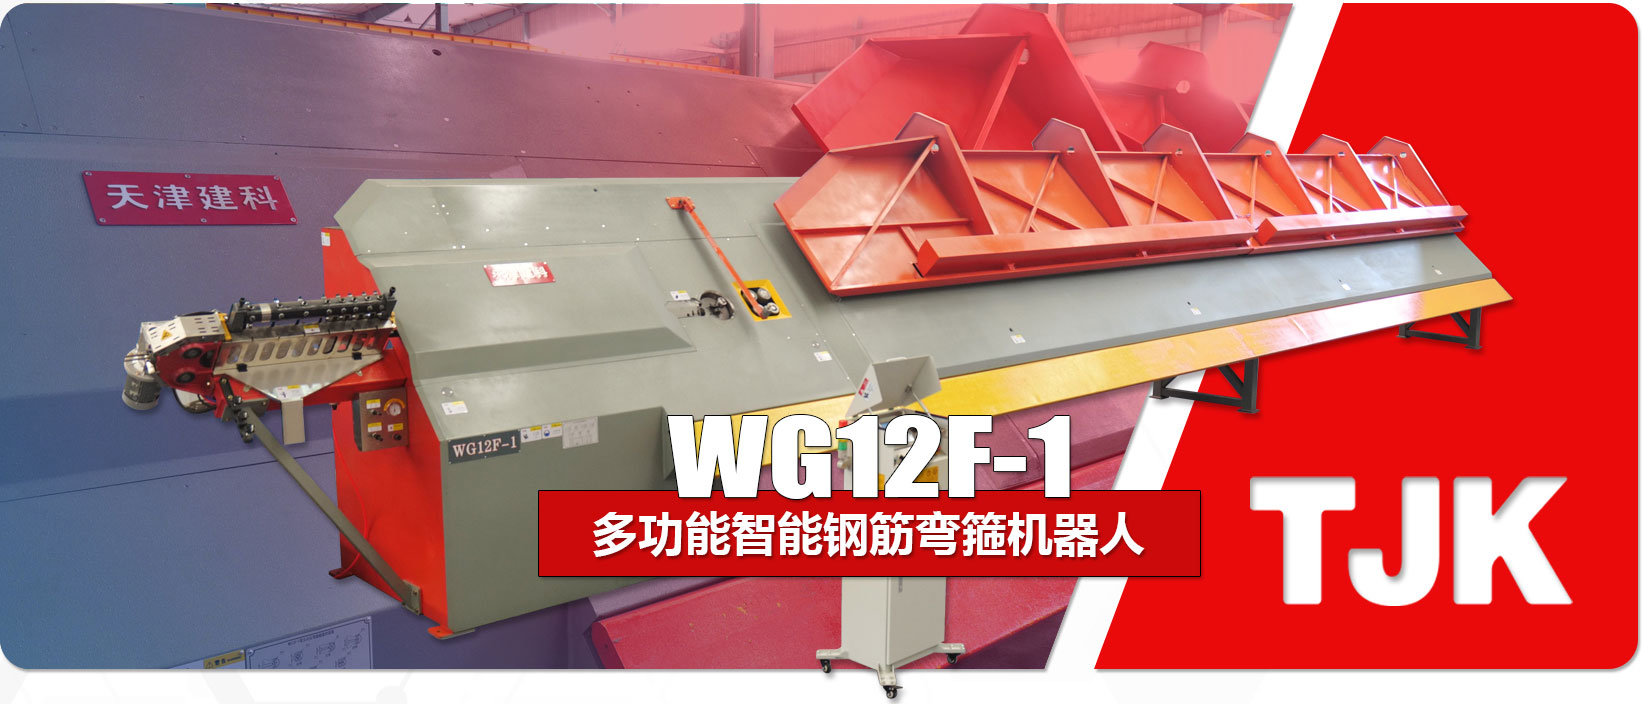 WG12F-1产品特点_03.jpg